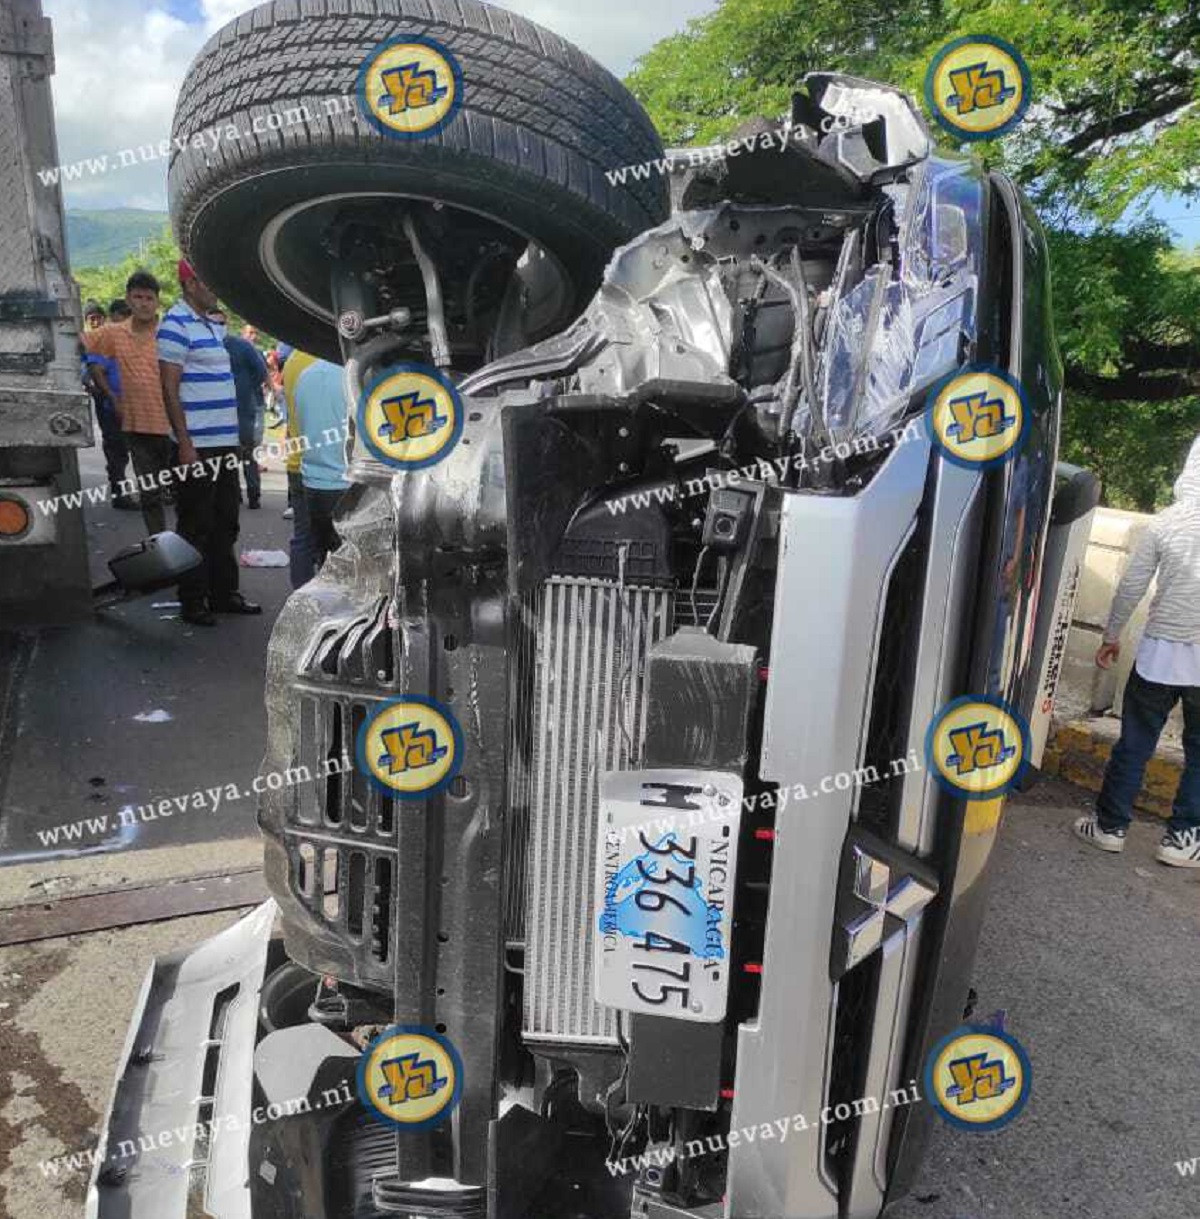 Accidentes viales cobraron la vida de 11 personas en la ultima semana en nicaragua